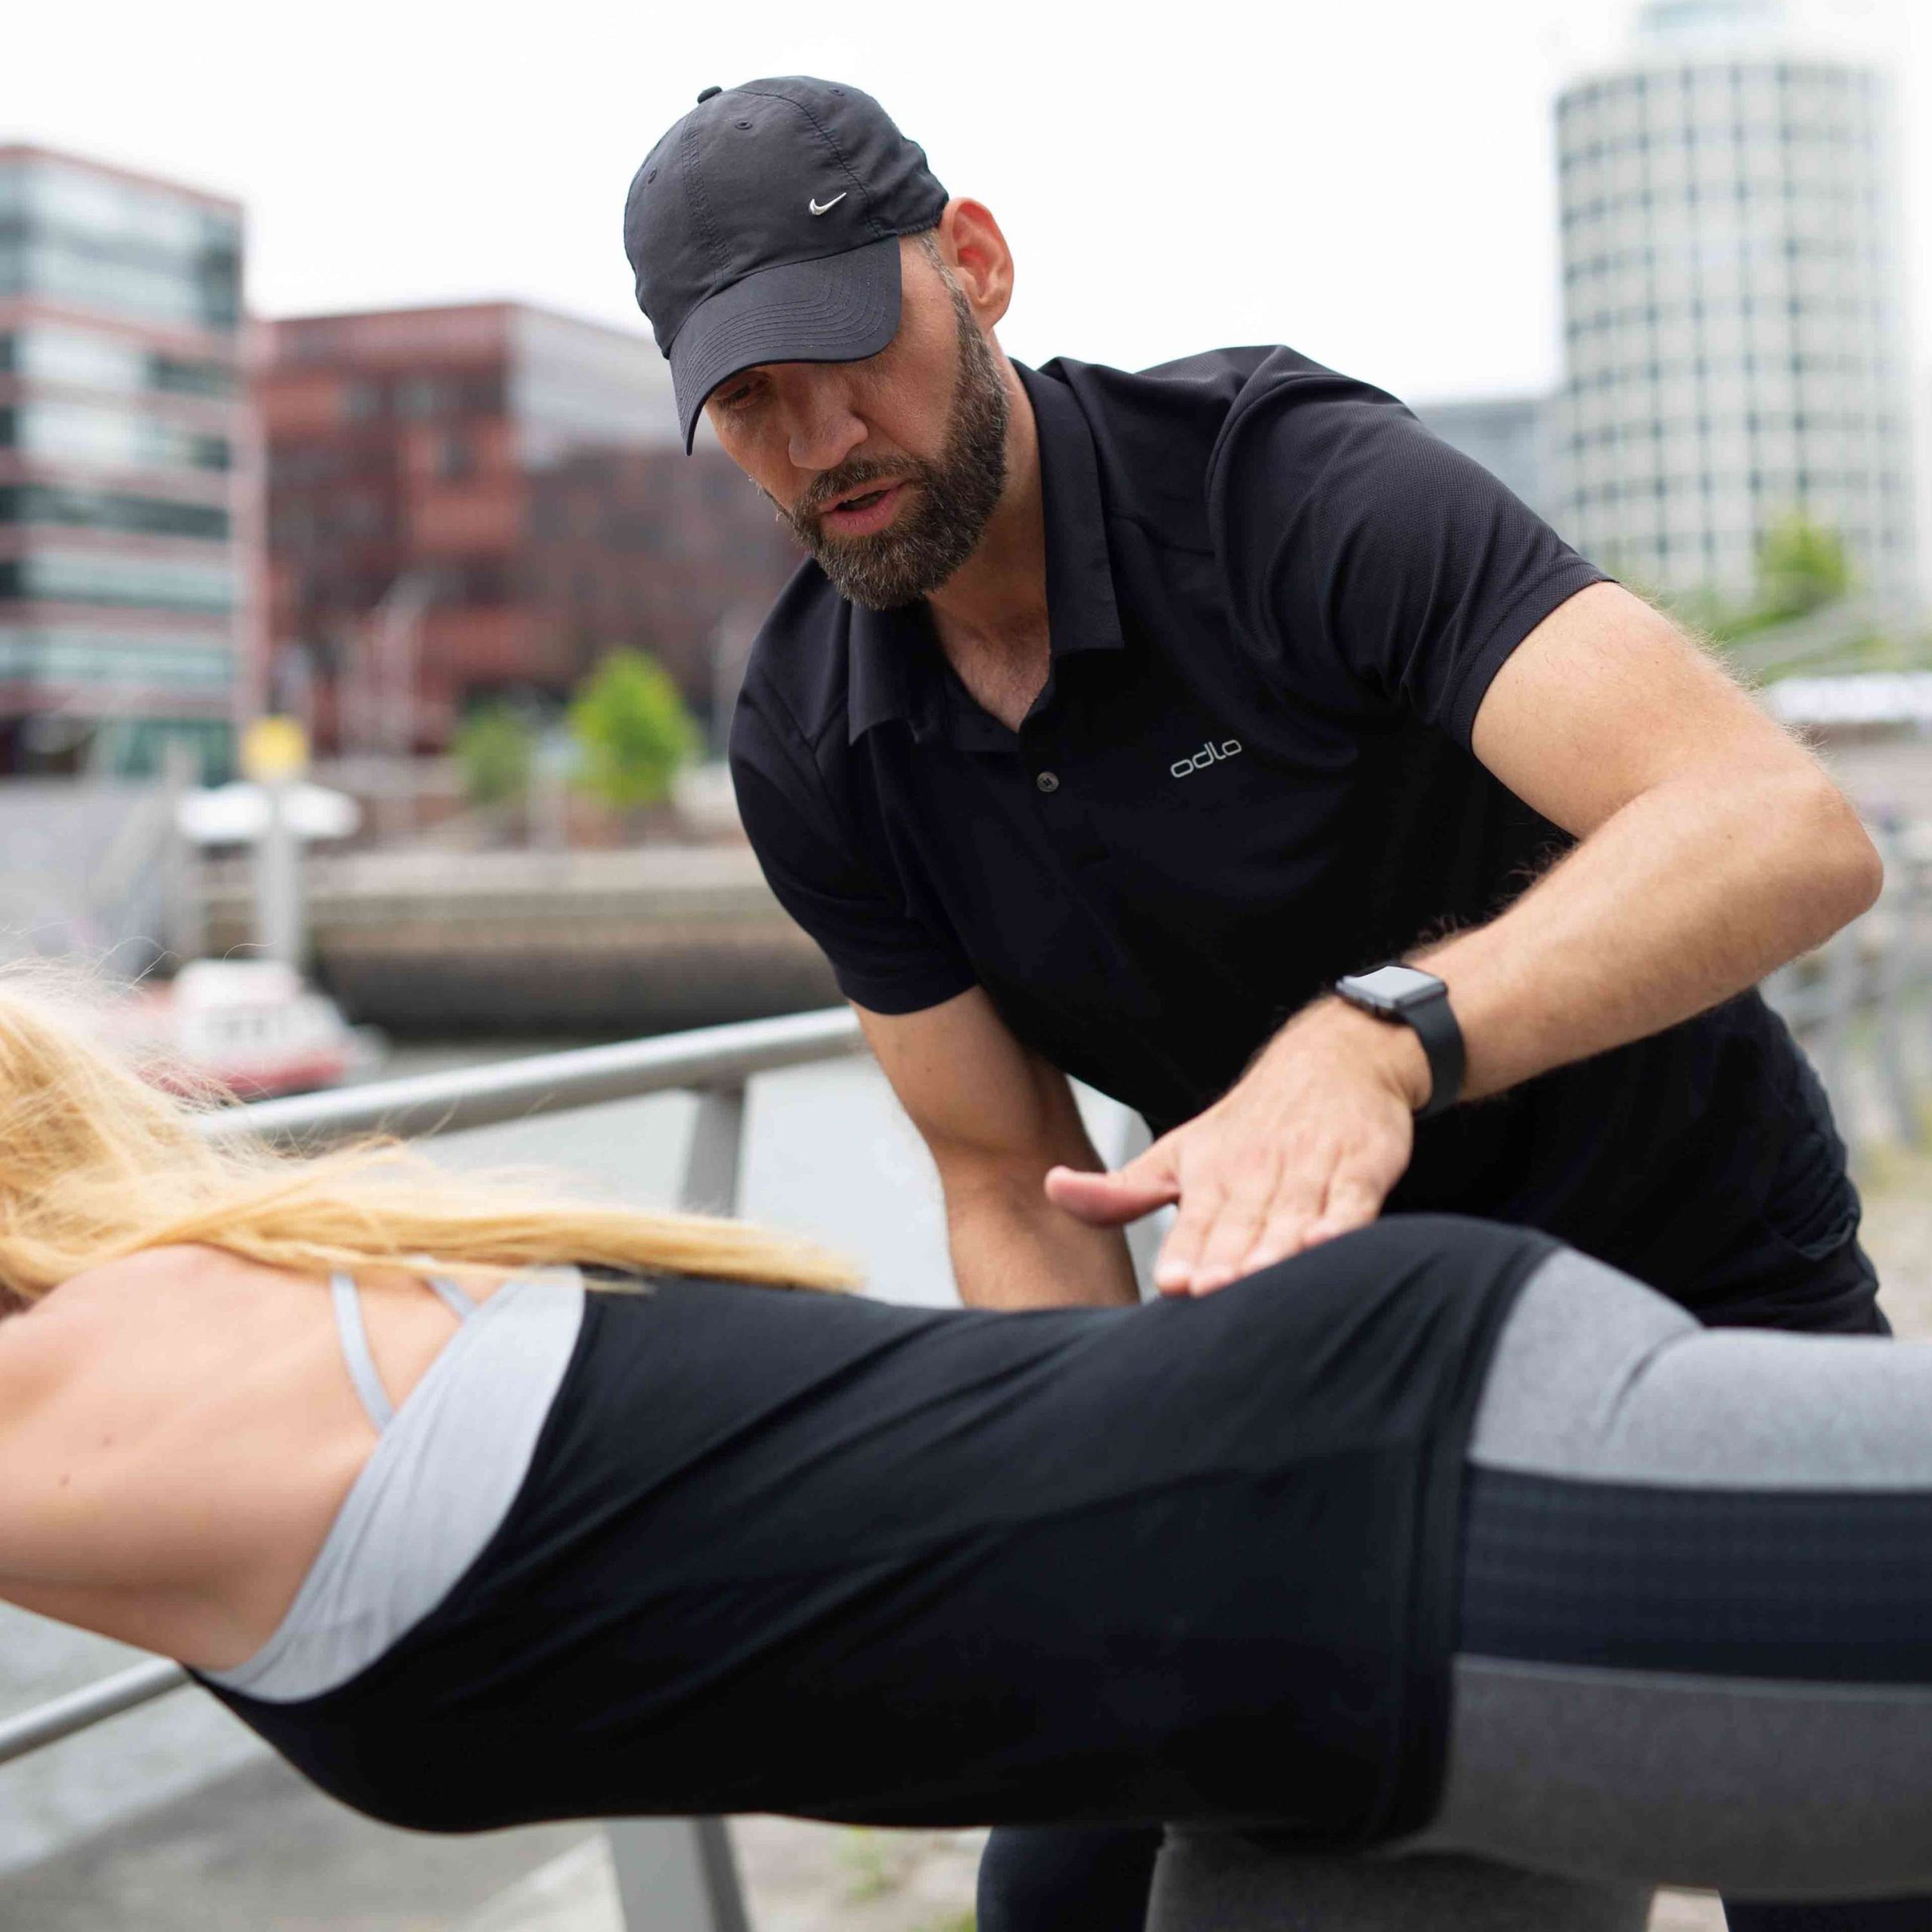 Der Personaltrainer kontrolliert die genaue Ausführung einer Rückenübung, die seine Fitnessportlerin im Liegen ausführt